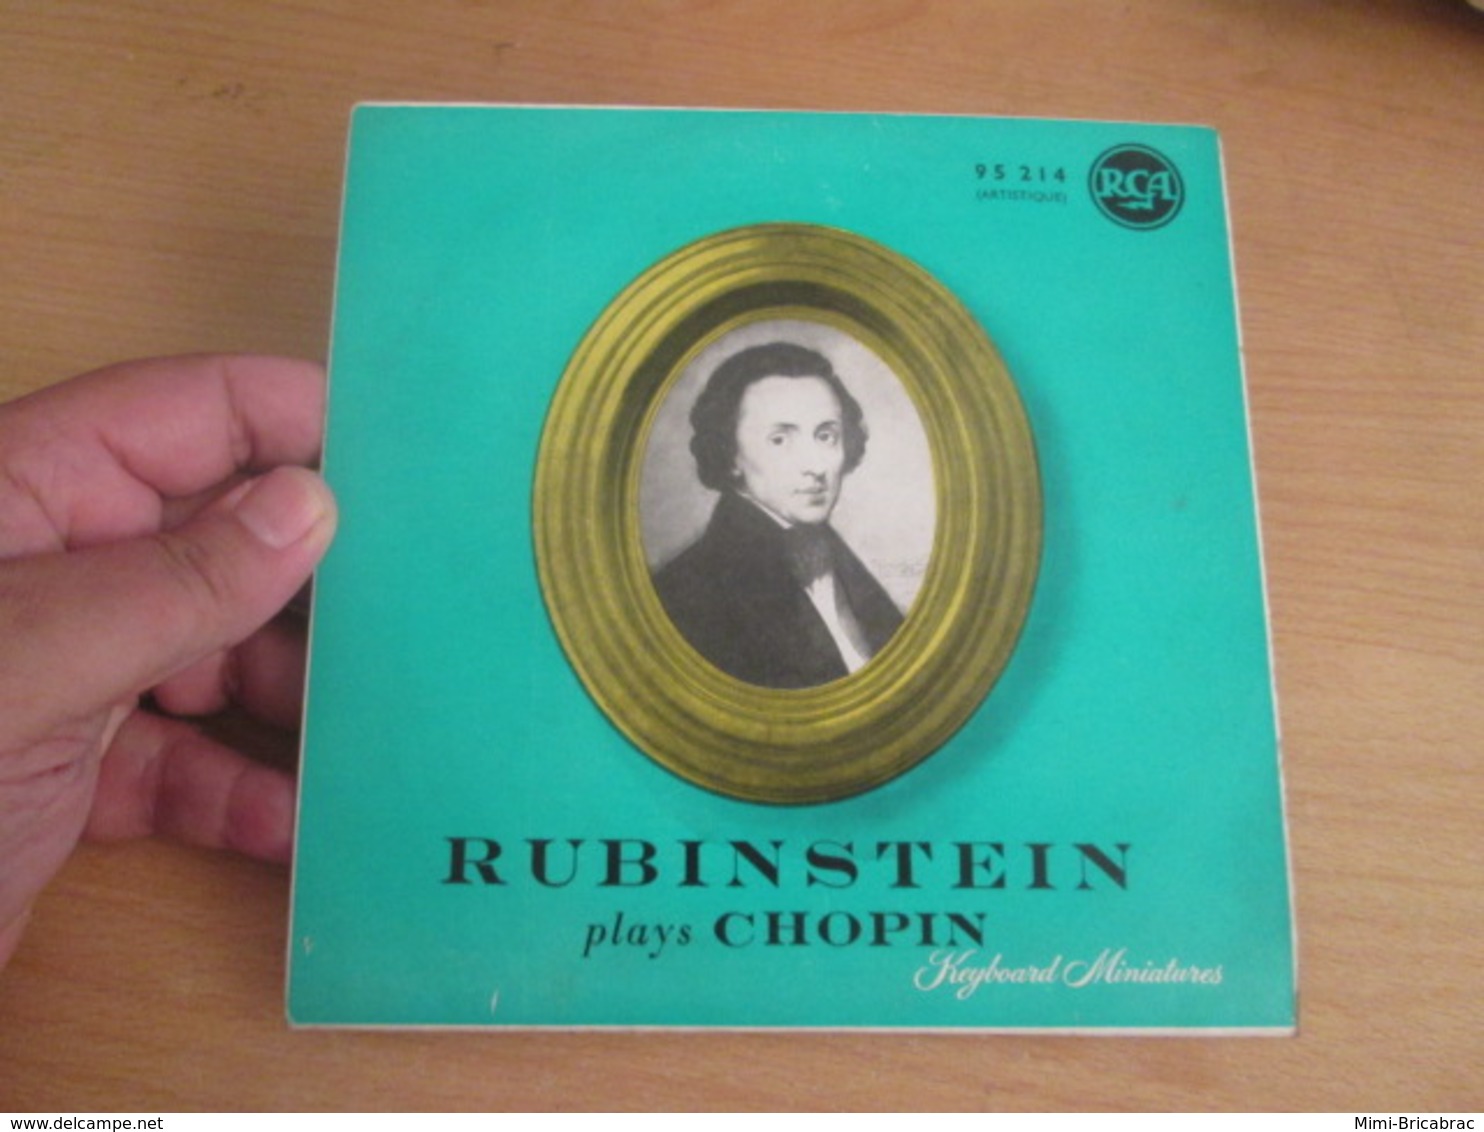 Vinyle 45T (7") RUBINSTEIN PLAYS CHOPIN 4 Valses Disque RCA 95 214 - Clásica